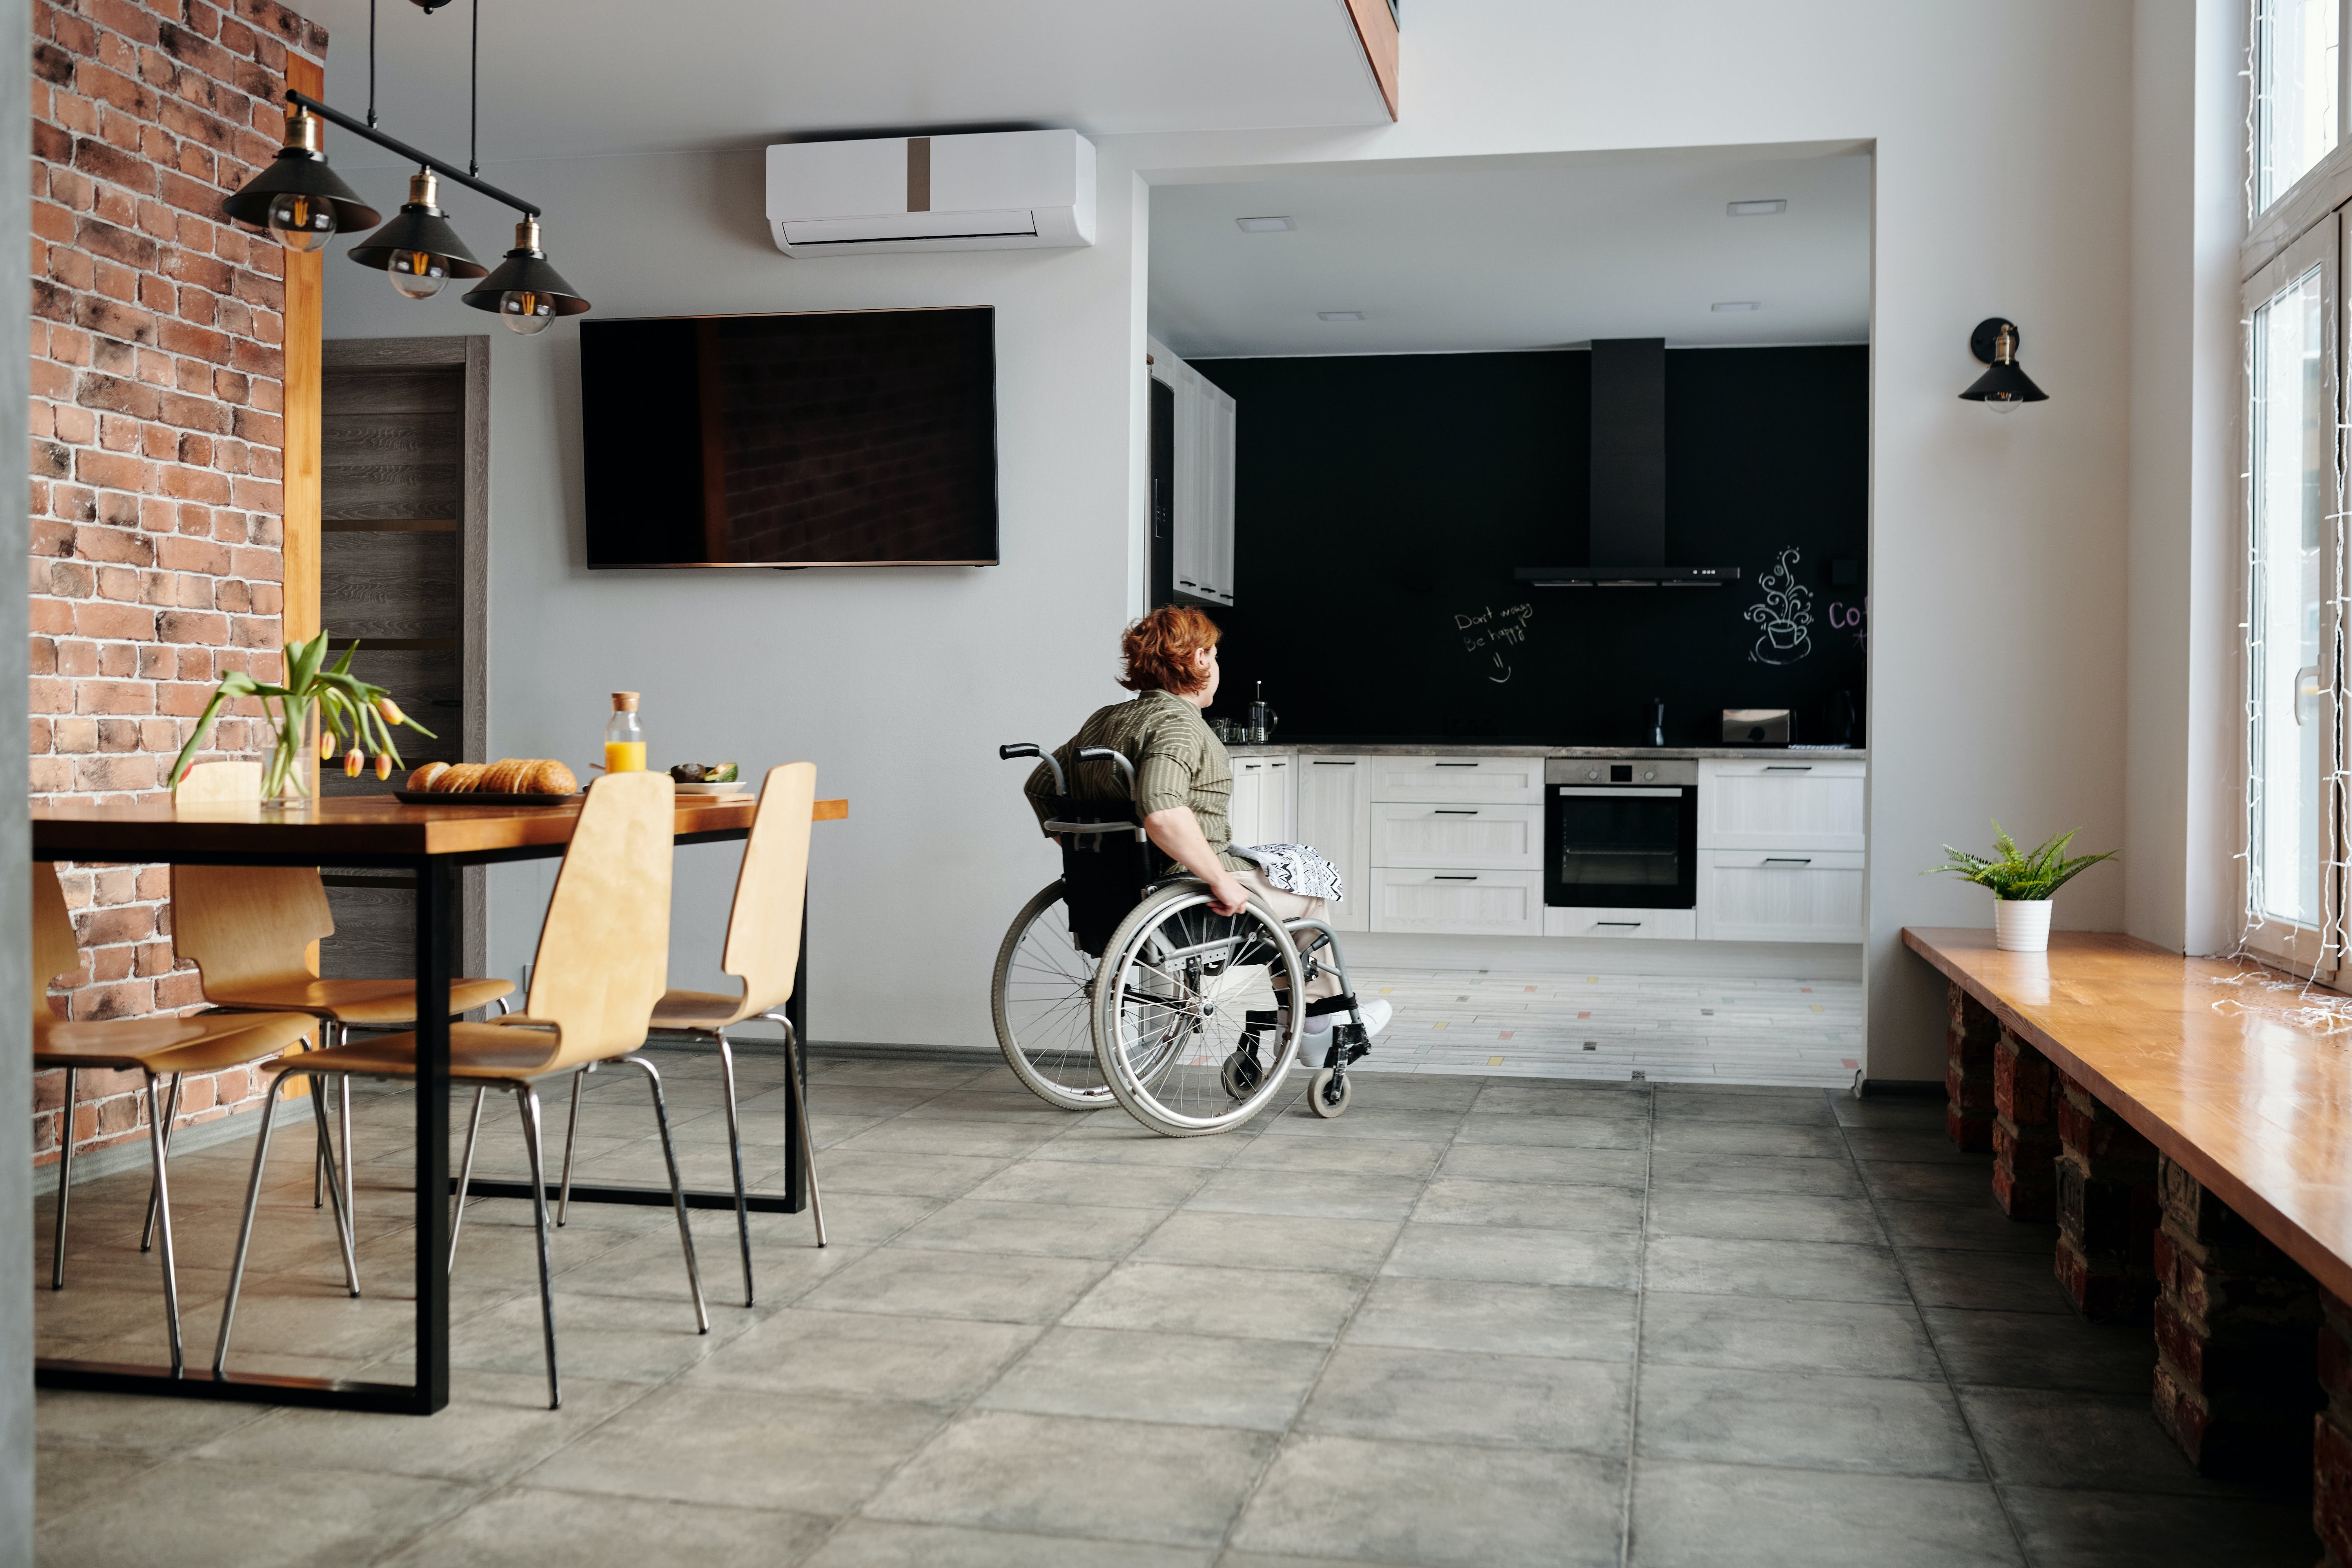 Покупка жилья инвалидам. Квартира для инвалида. Кухня для колясочника. Квартира для инвалида колясочника. Кухня для инвалида колясочника.